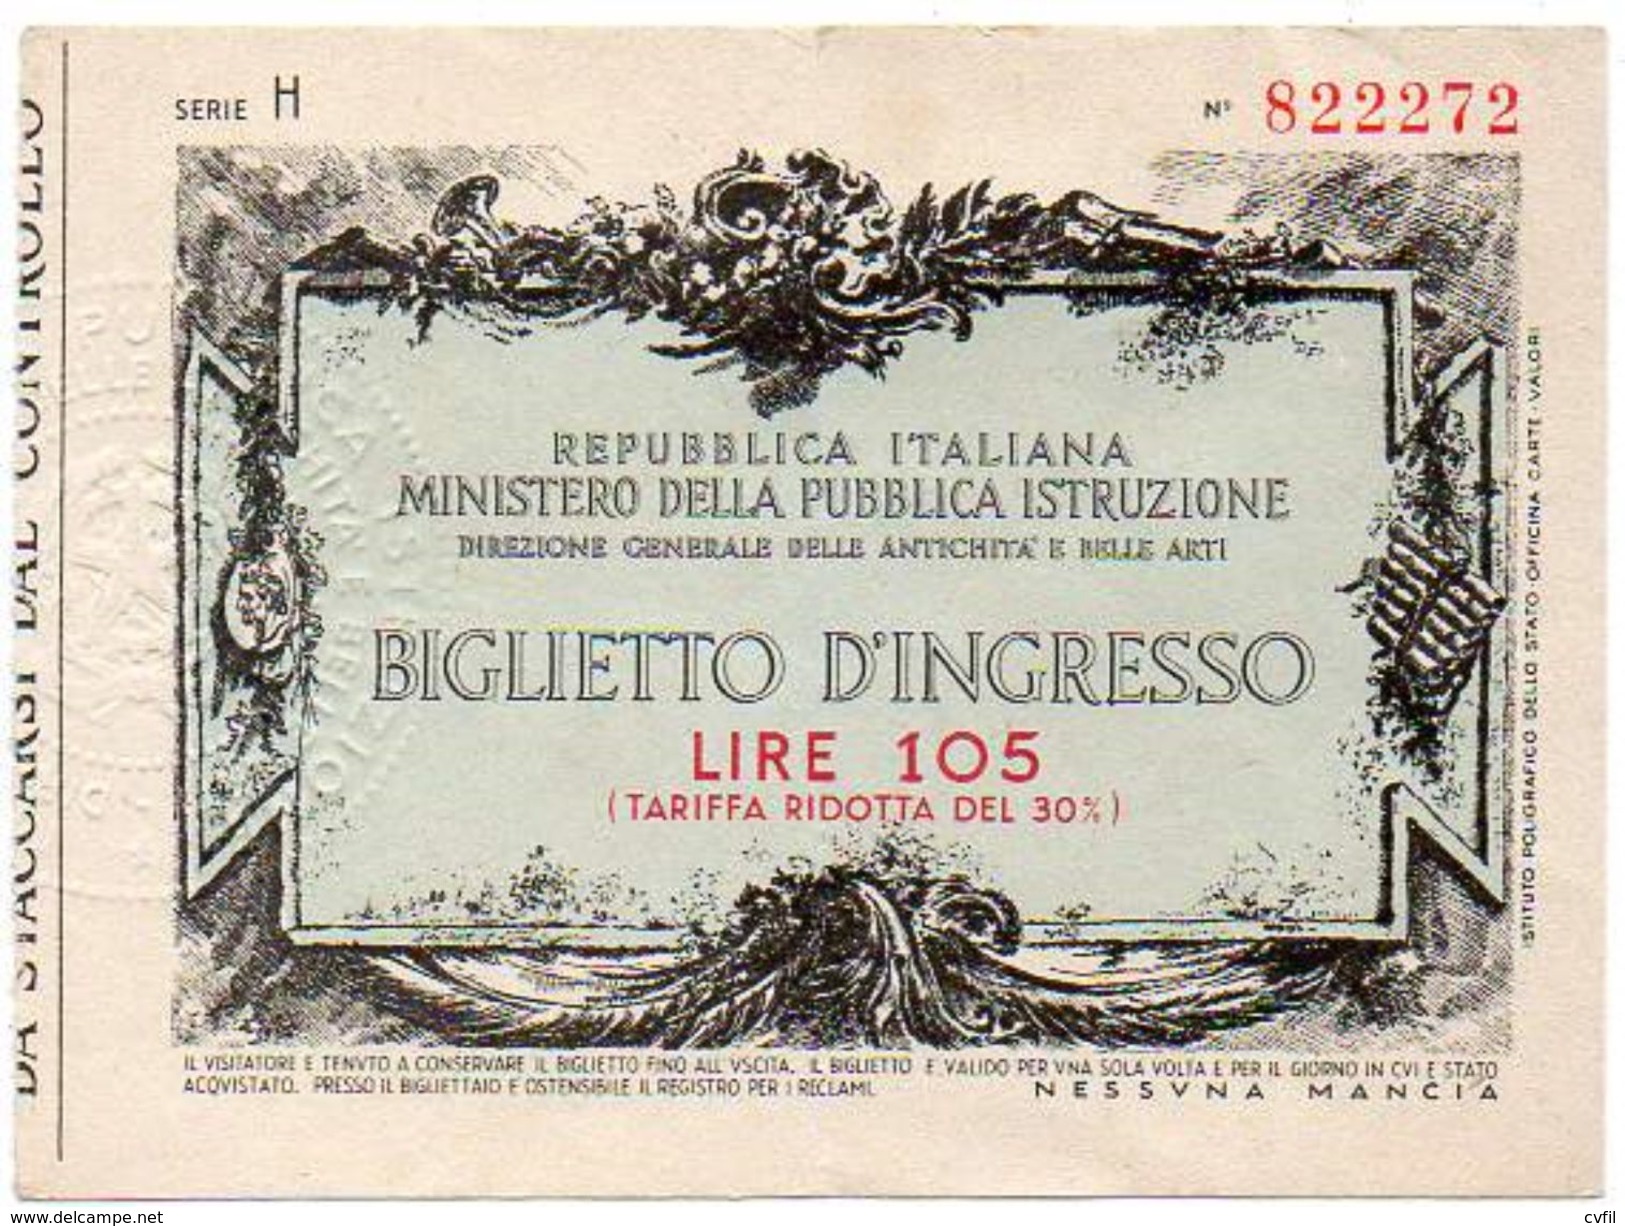 BIGLIETTO D'INGRESSO DELLE ANTICHITÀ E BELLE ARTI. Lire 105 (tariffa Ridotta) - Tickets - Vouchers